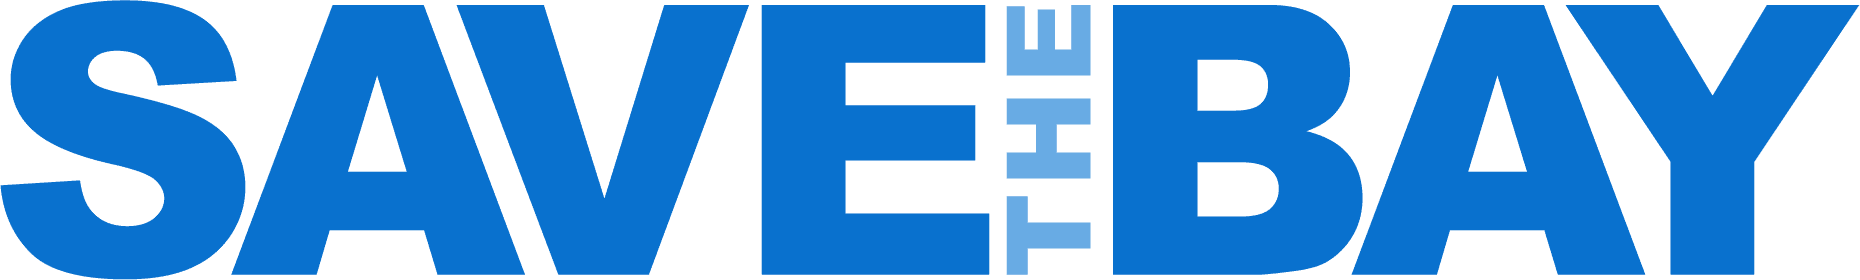 Save the Bay logo